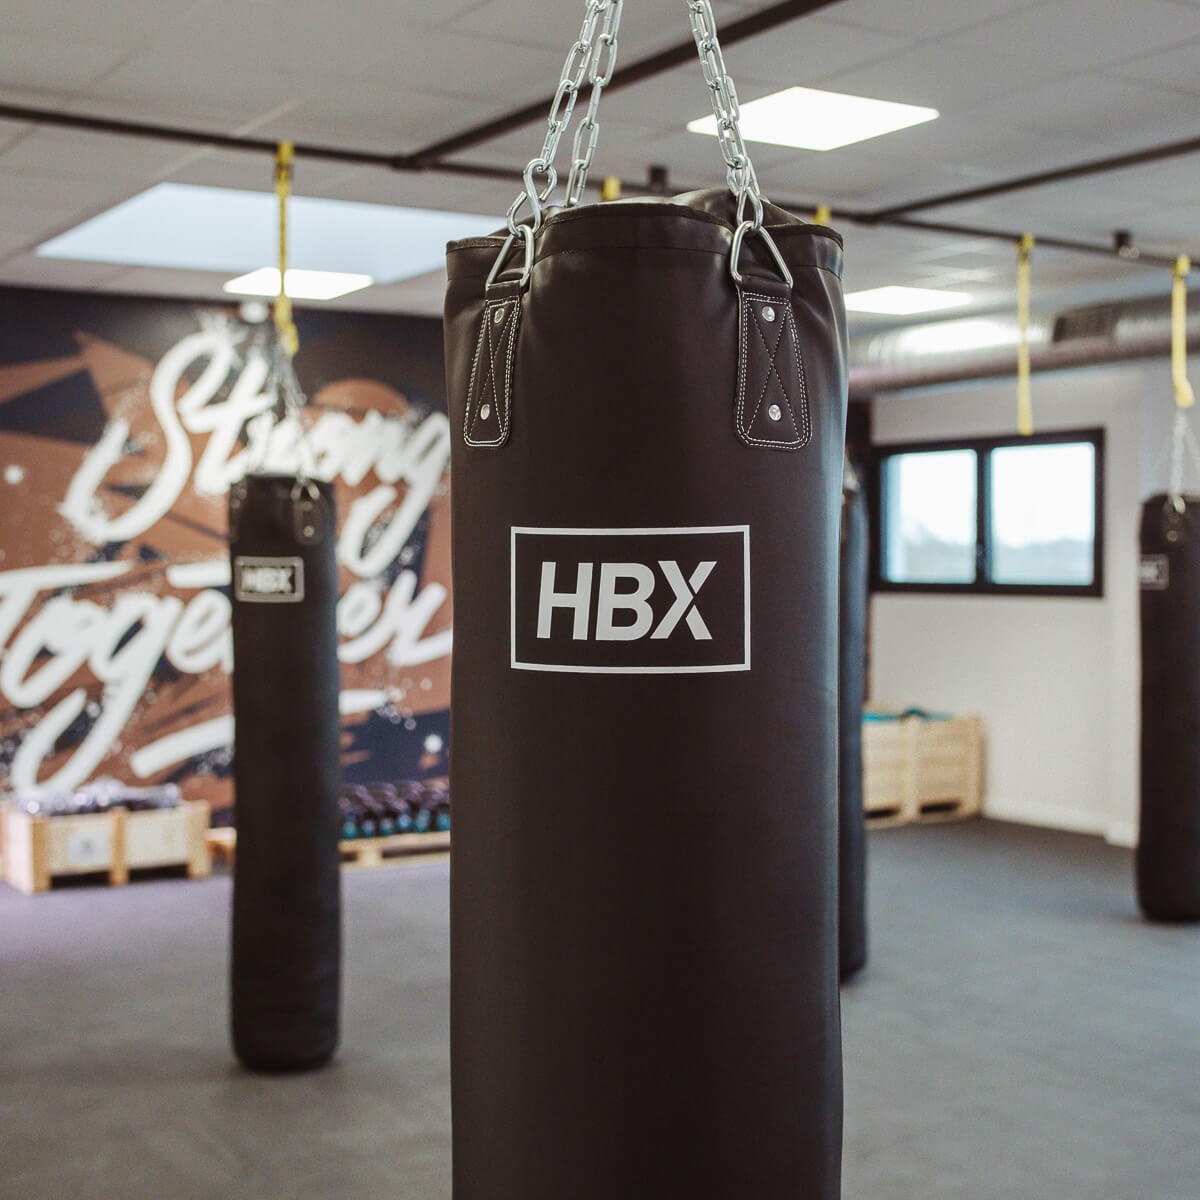 HBX boxing à Artligne à Carquefou